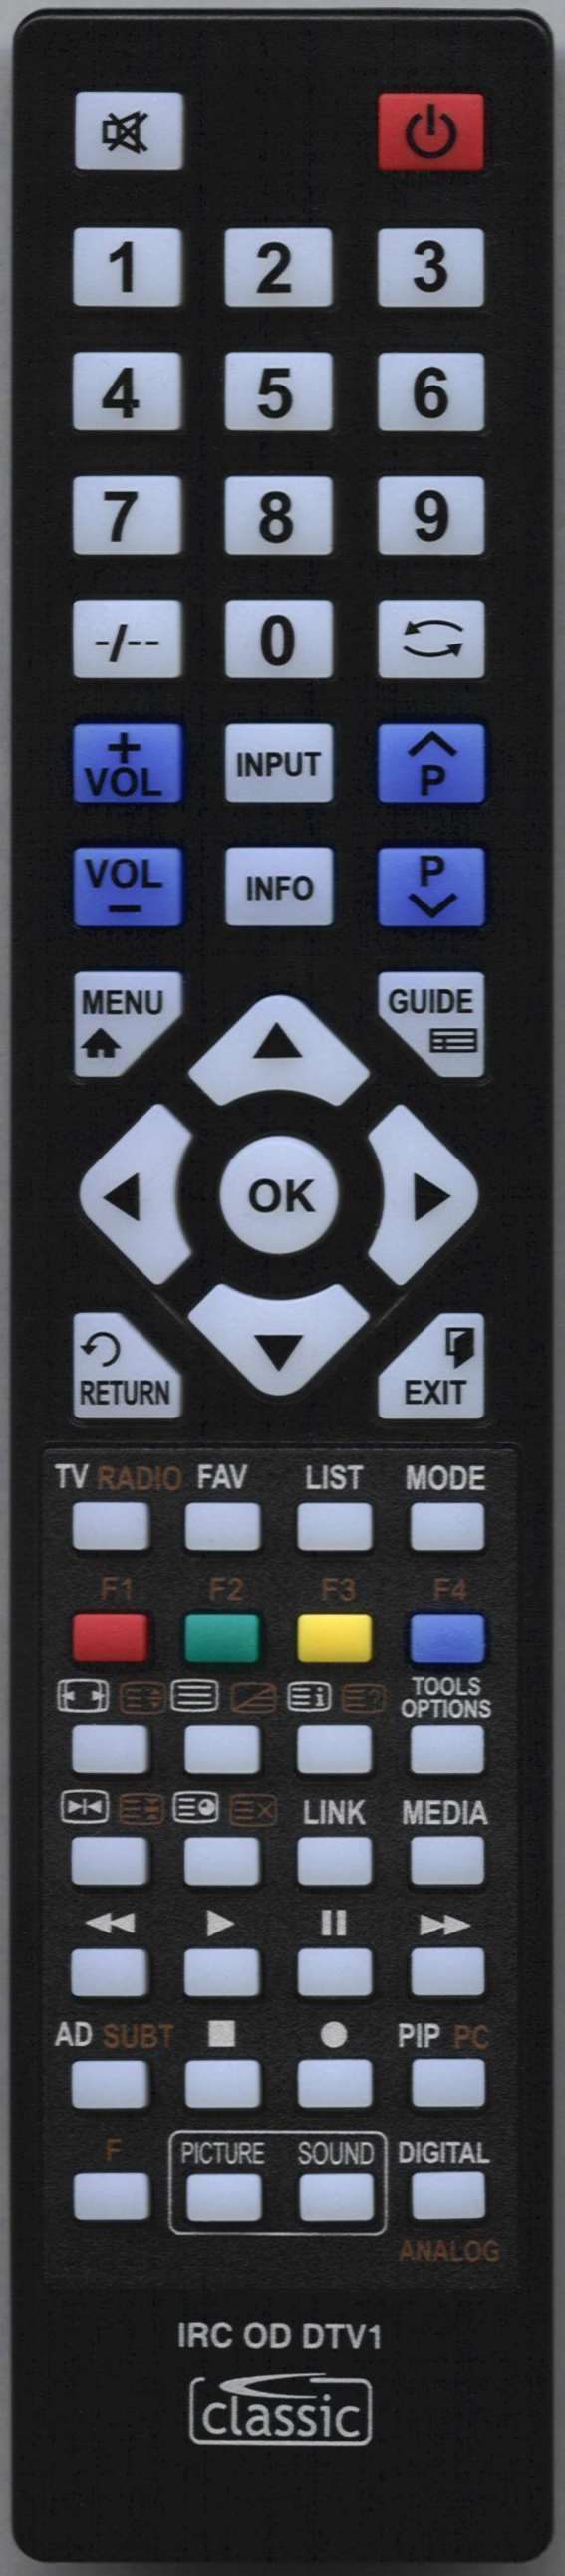 LUXOR 10118773 Remote Control Alternative